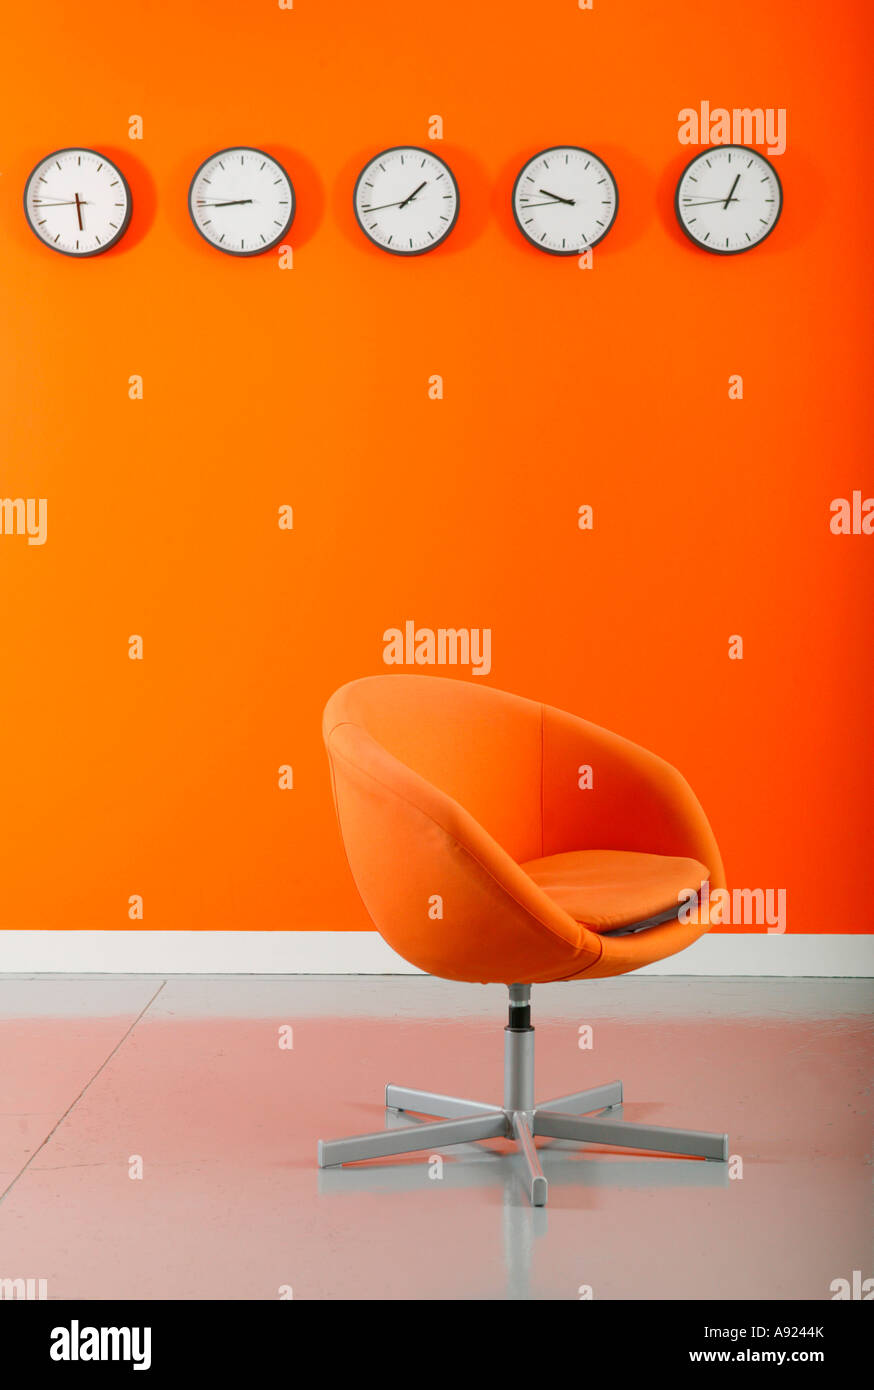 Sedie di colore arancione nella parte anteriore di una fila di orologi su  una parete arancione Foto stock - Alamy